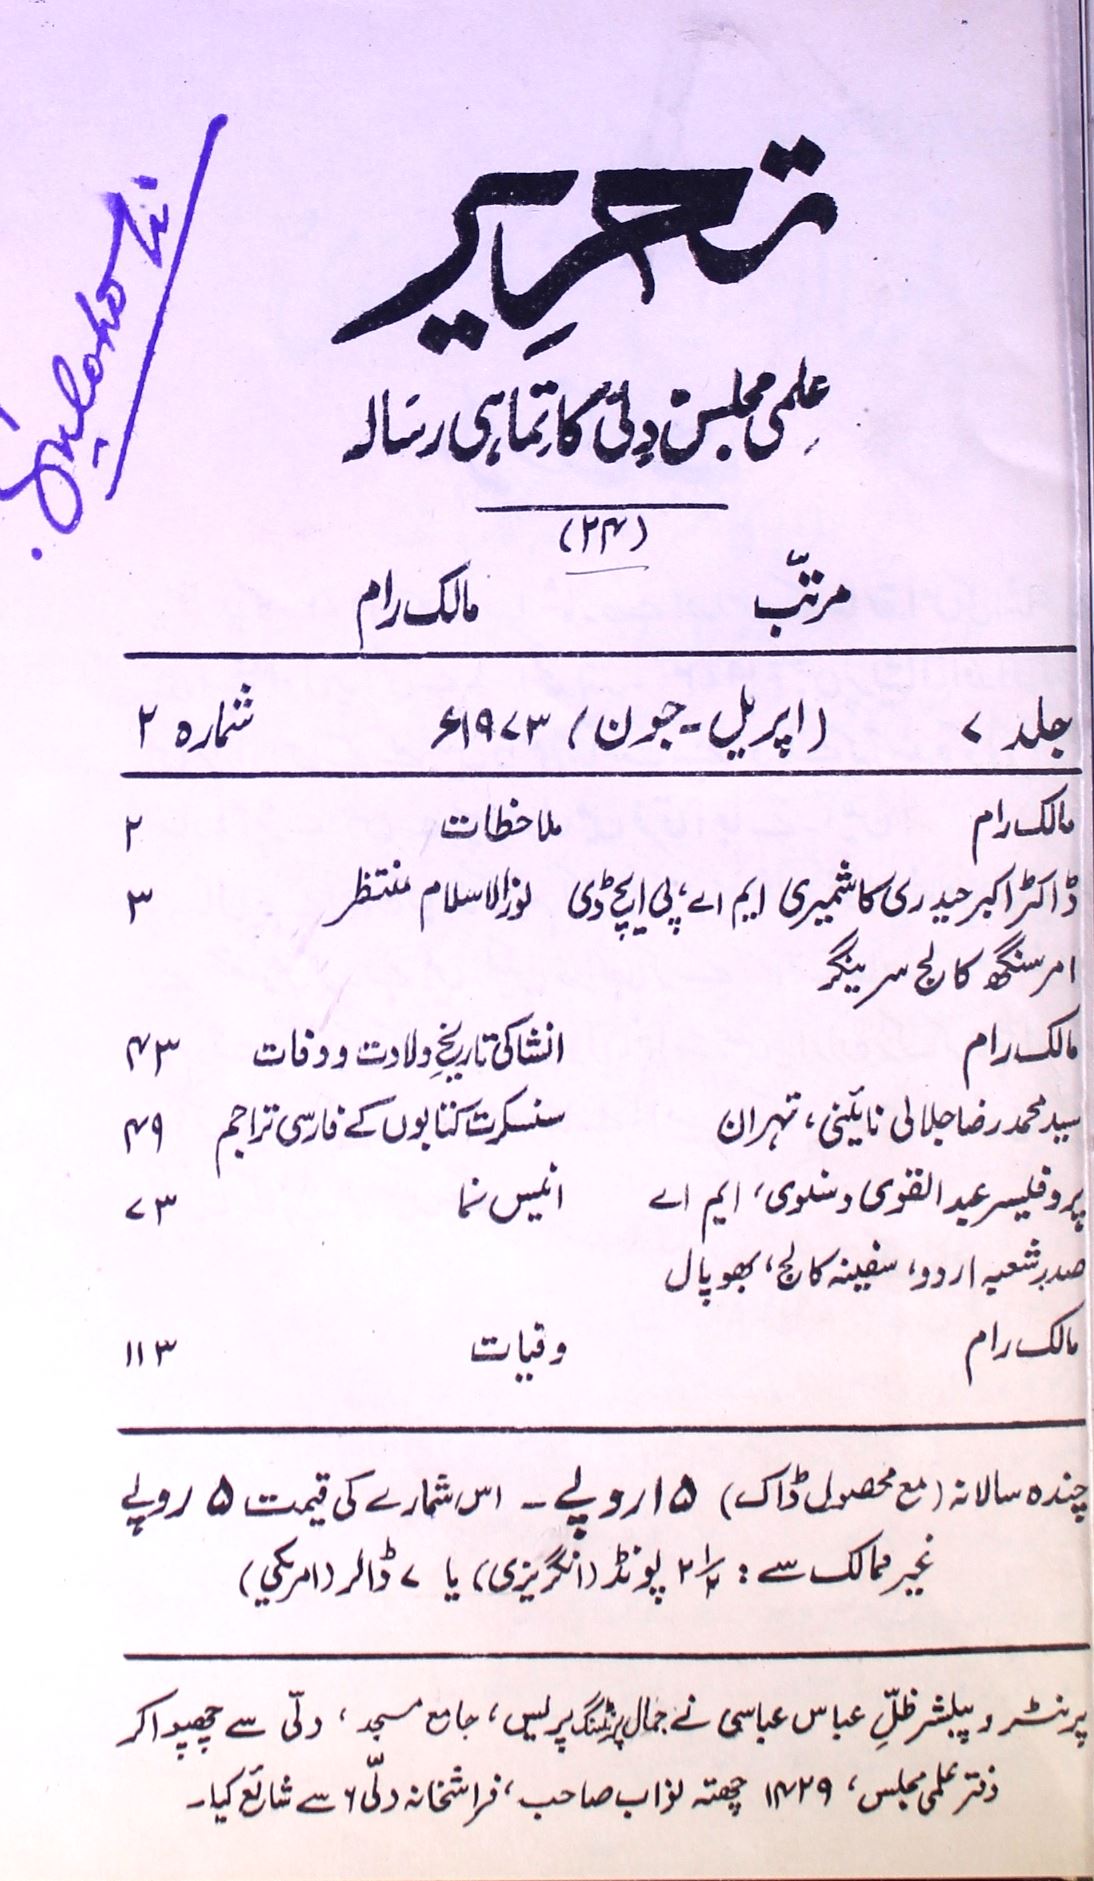 Tahreer Jild-7 Shumara.2 Apr-Jun - Hyd-Shumara Number-002